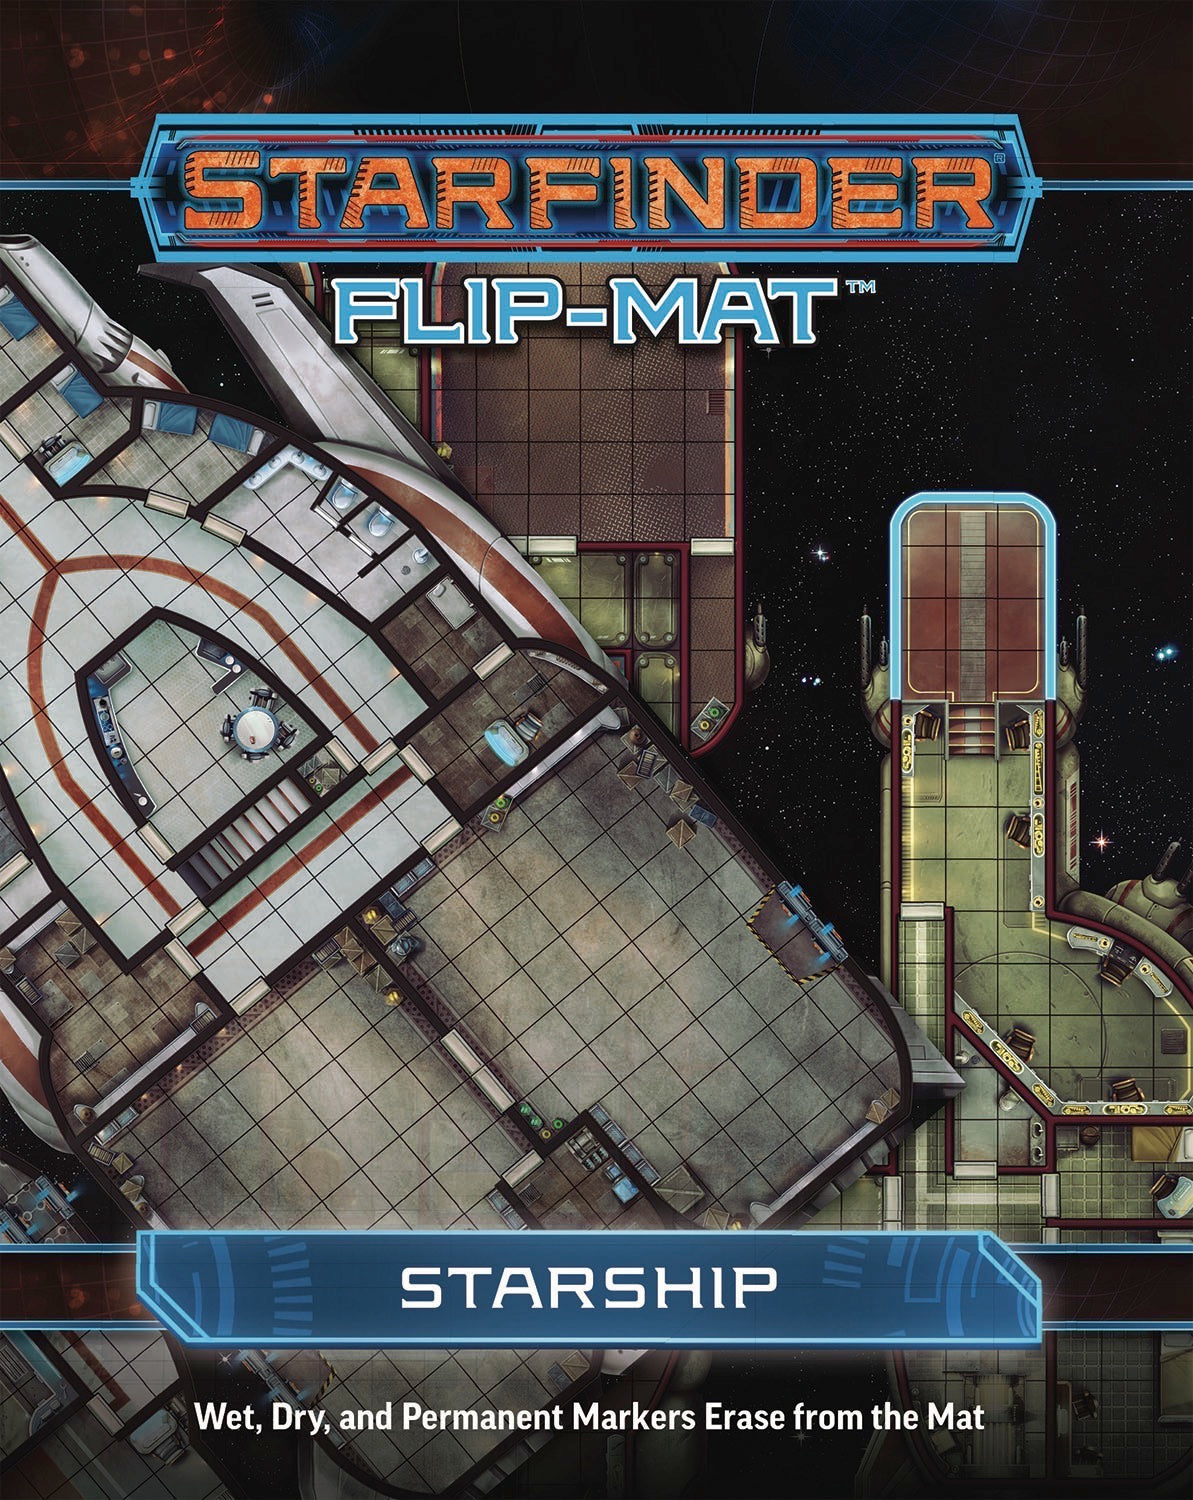 Starfinder - Flip-Mat: Starship